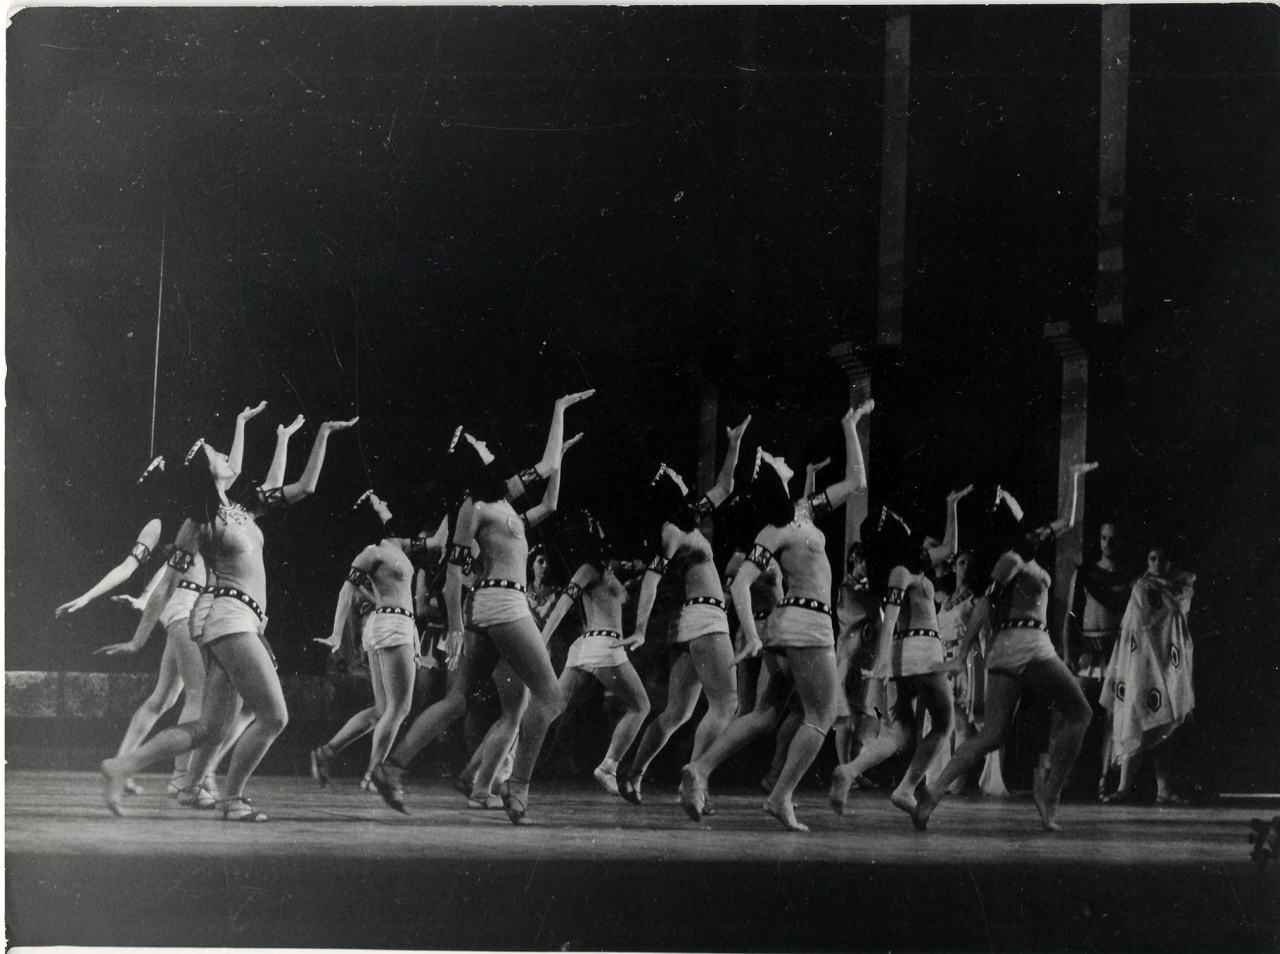  Լուսանկար՝ Տեսարան .Բուխարեստում Ա. Խաչատրյանի «Սպարտակ» բալետի պրեմիերայից